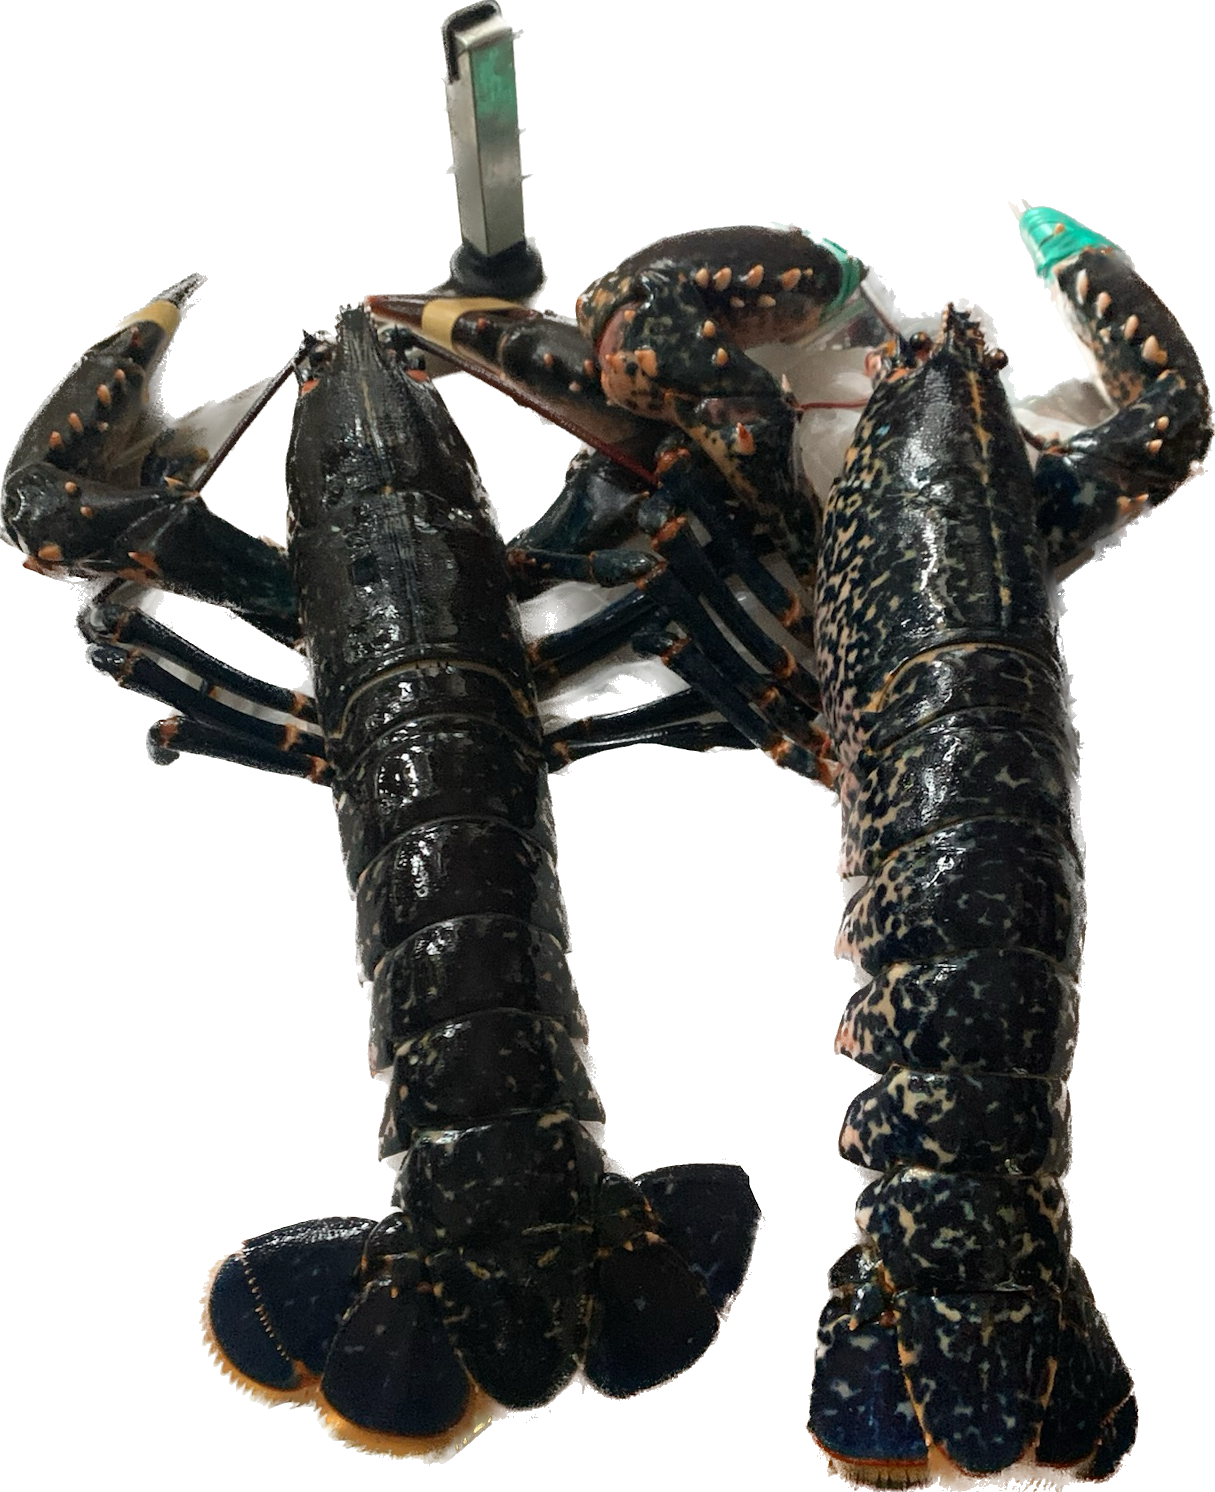 Lobster 龍蝦